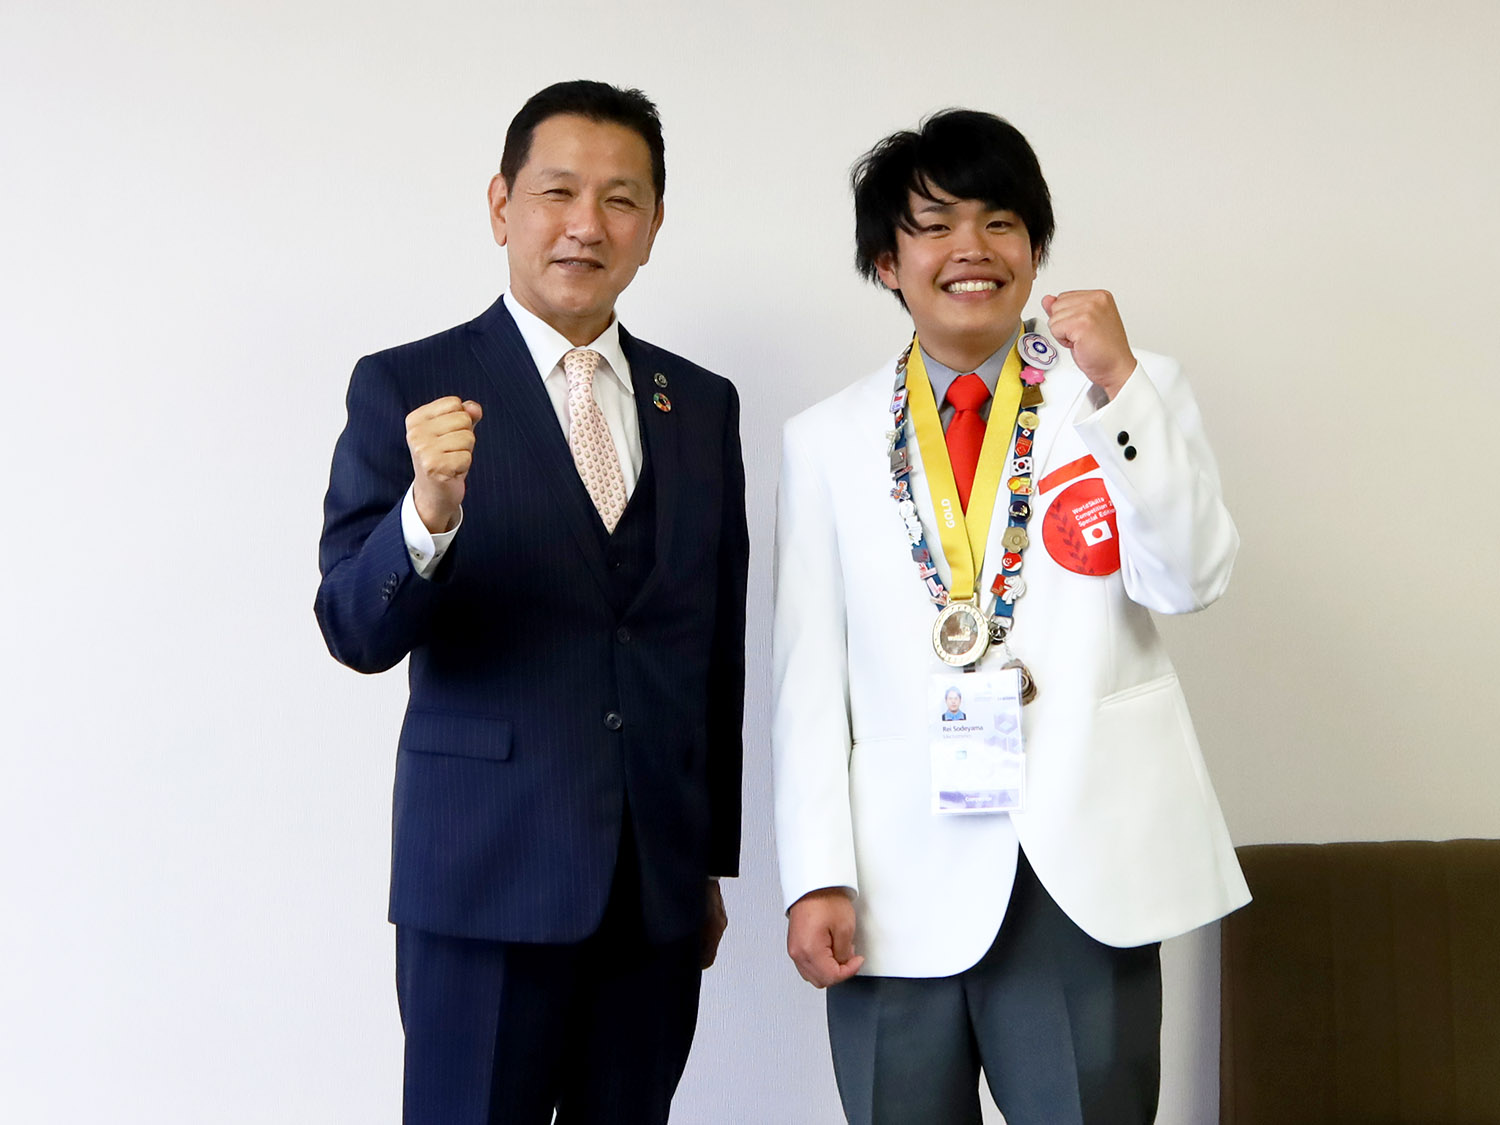 技能五輪国際大会メカトロニクス職種で金メダルを獲得した袖山さん